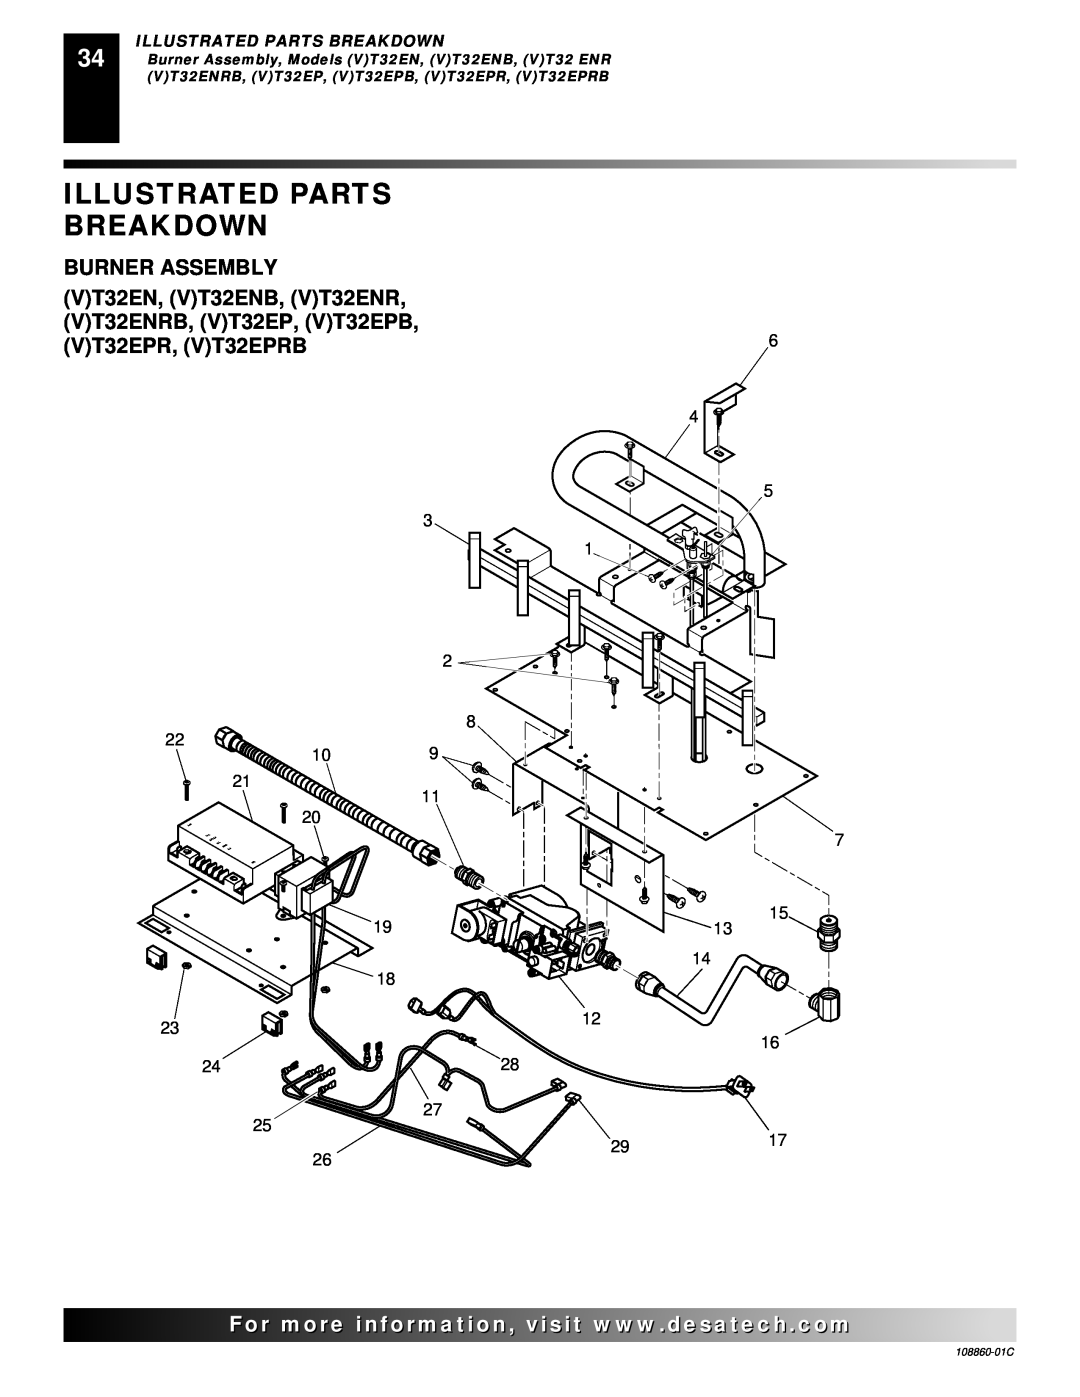 Desa (V)T36EP, (V)T36EN installation manual Illustrated Parts Breakdown, Burner Assembly, 108860-01C 